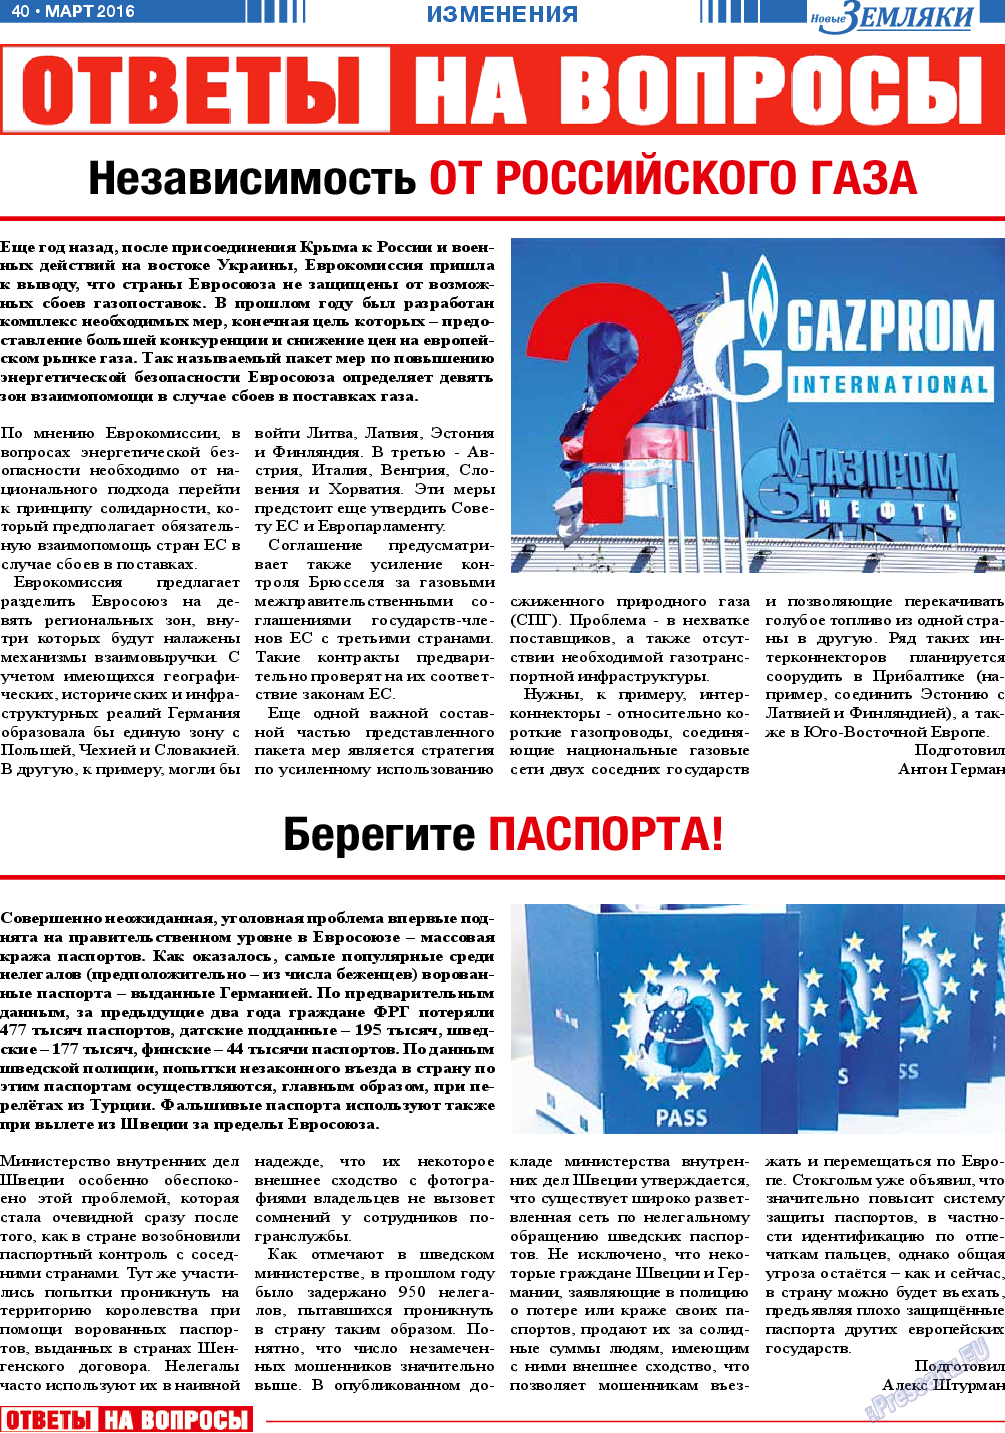 Новые Земляки, газета. 2016 №3 стр.40